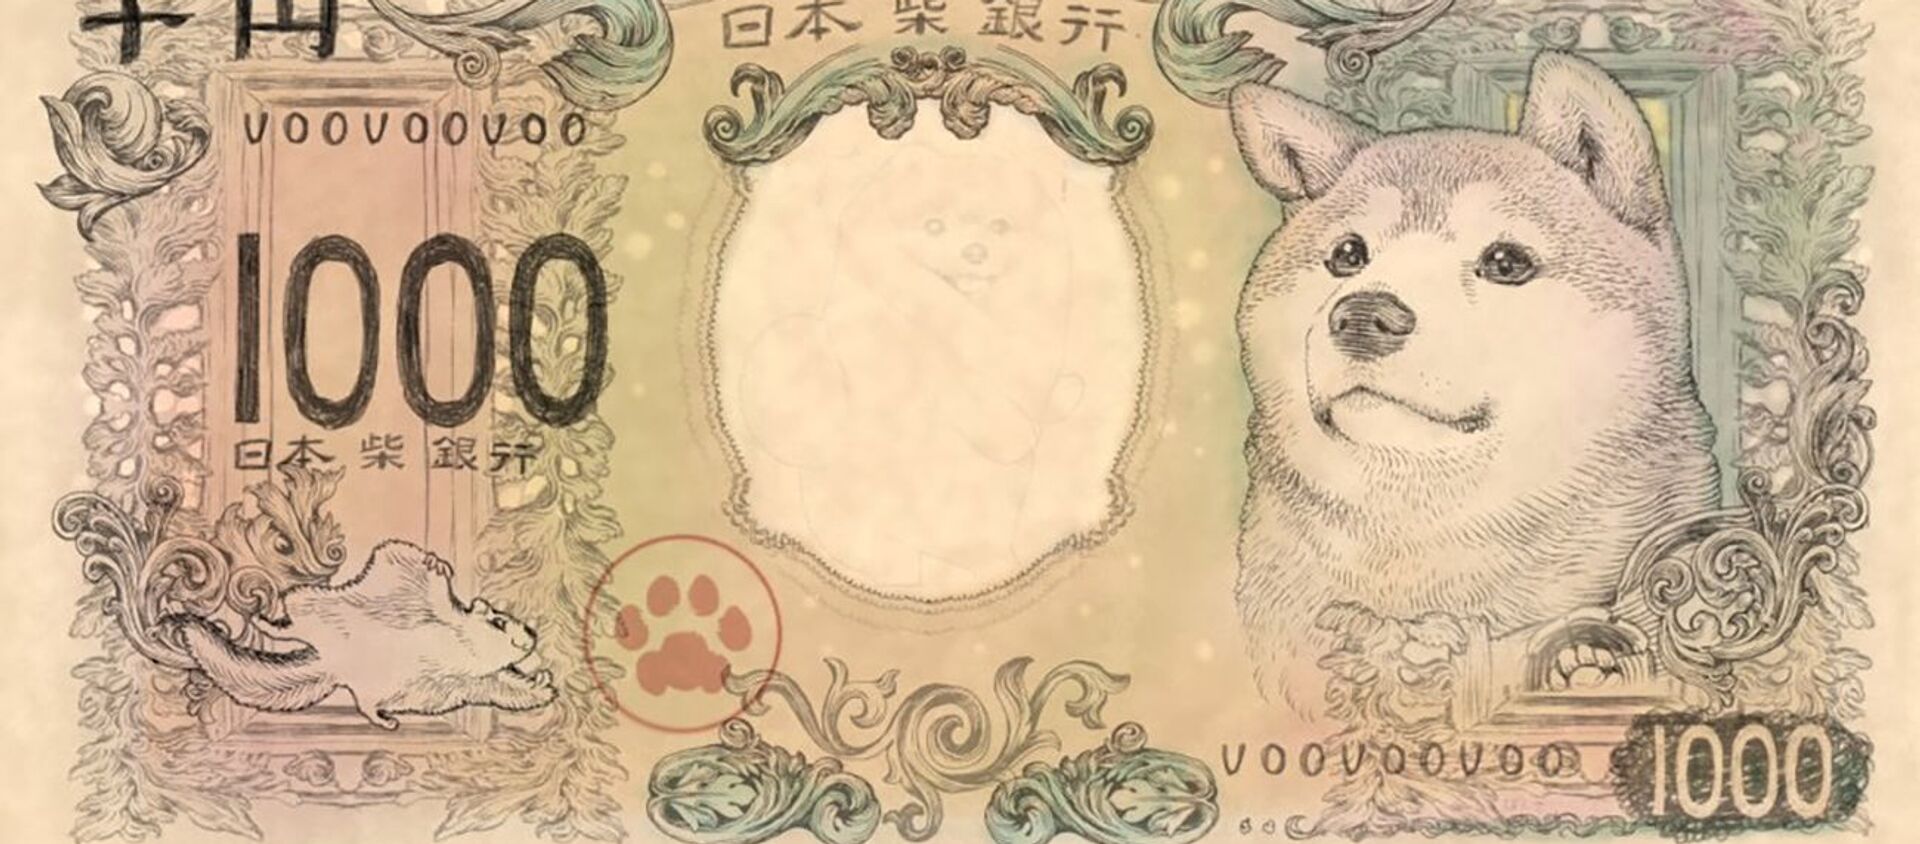 柴犬紙幣 - Sputnik 日本, 1920, 09.10.2019